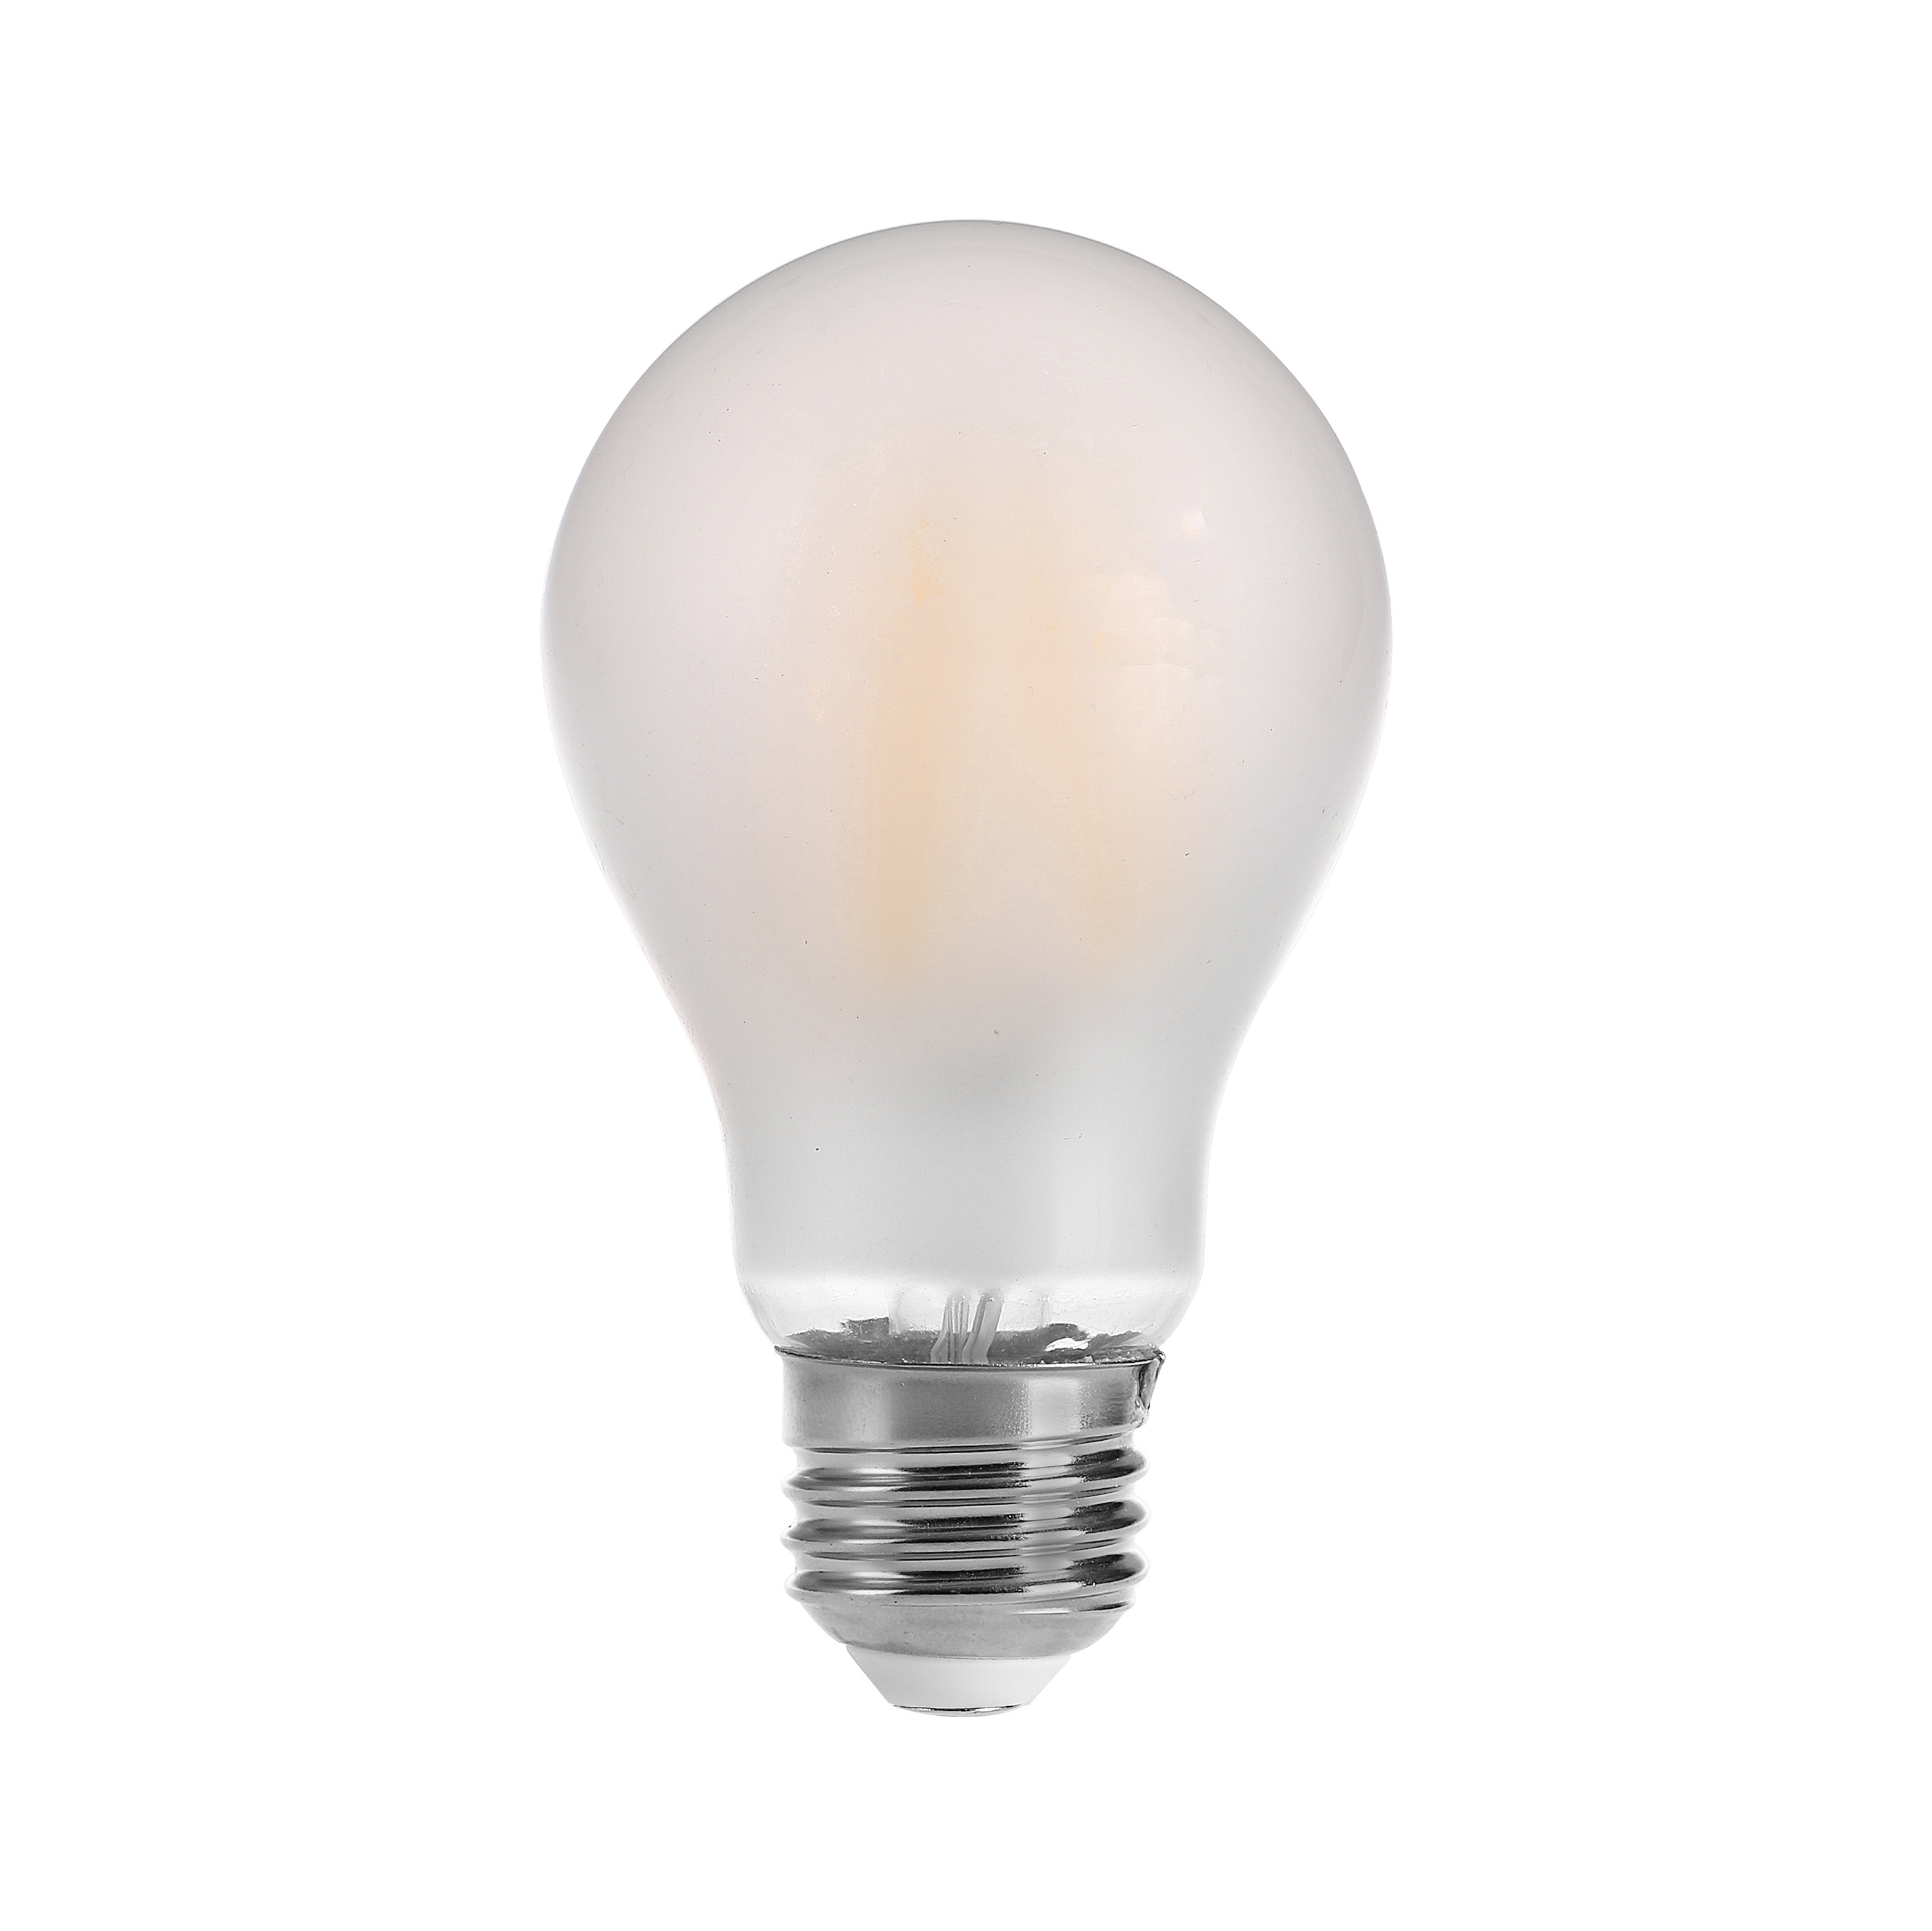 Glühlampen des Soem-Weinlesefadens LED energiesparend, Glühlampen Dimmable LED Faden, Birne des 360-Grad-Lichtstrahlwinkels LED